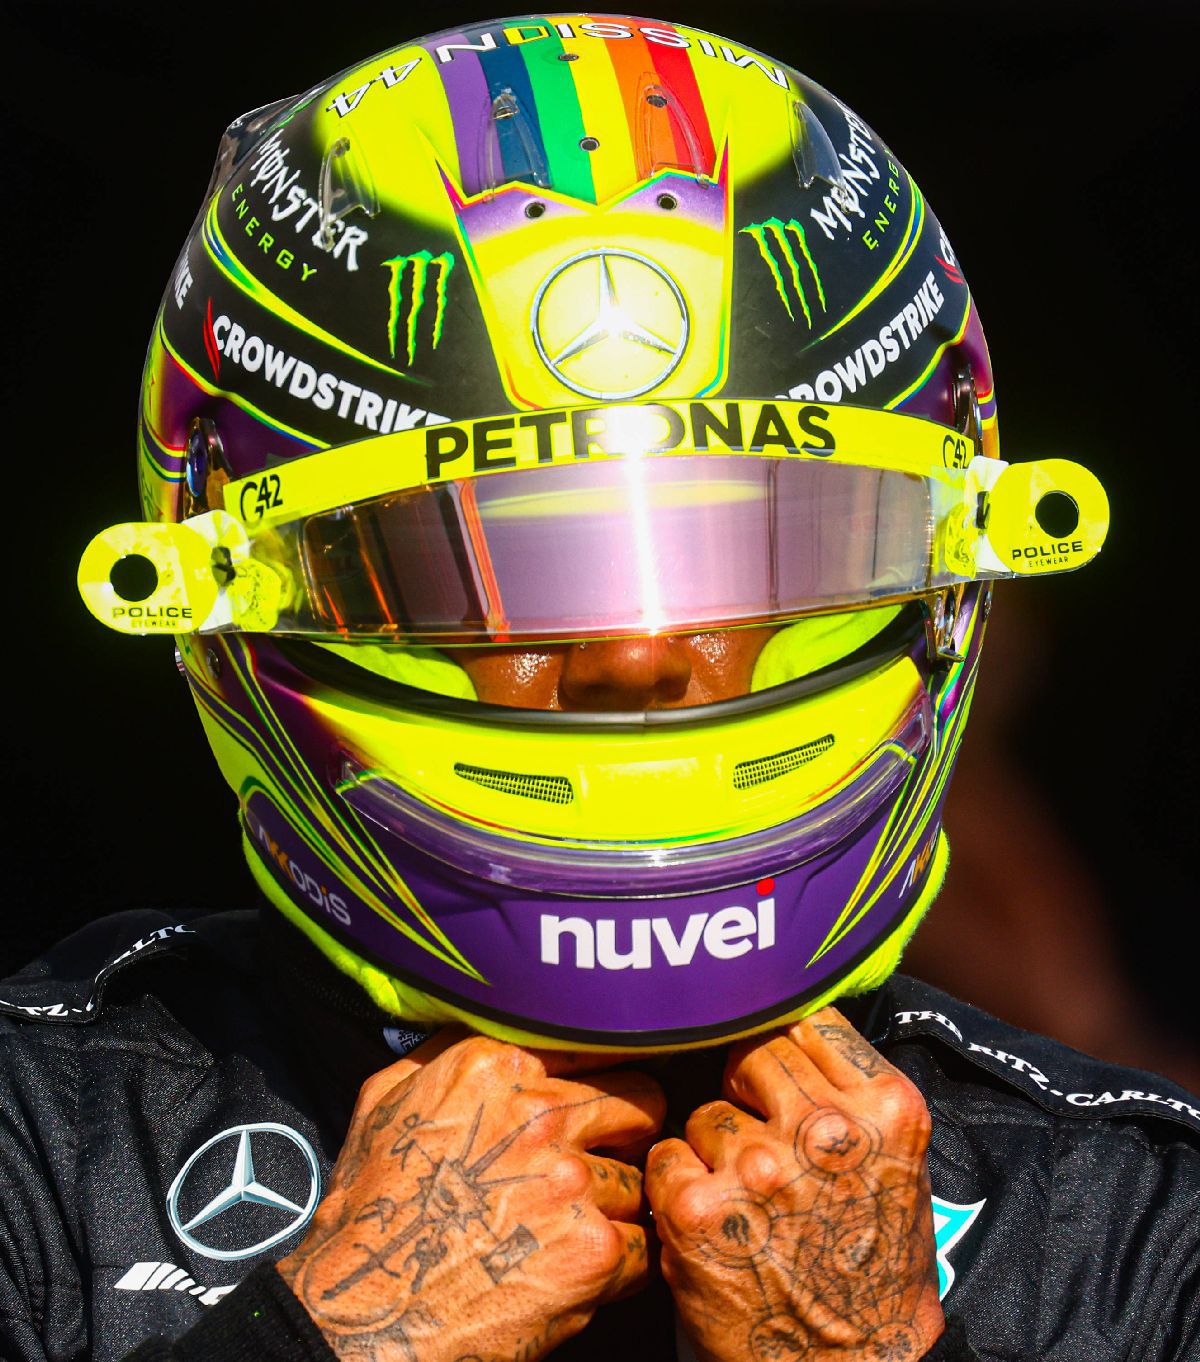 Lewis Hamilton și mesajele civice afișate de-a lungul timpului pe circuitele de Formula 1